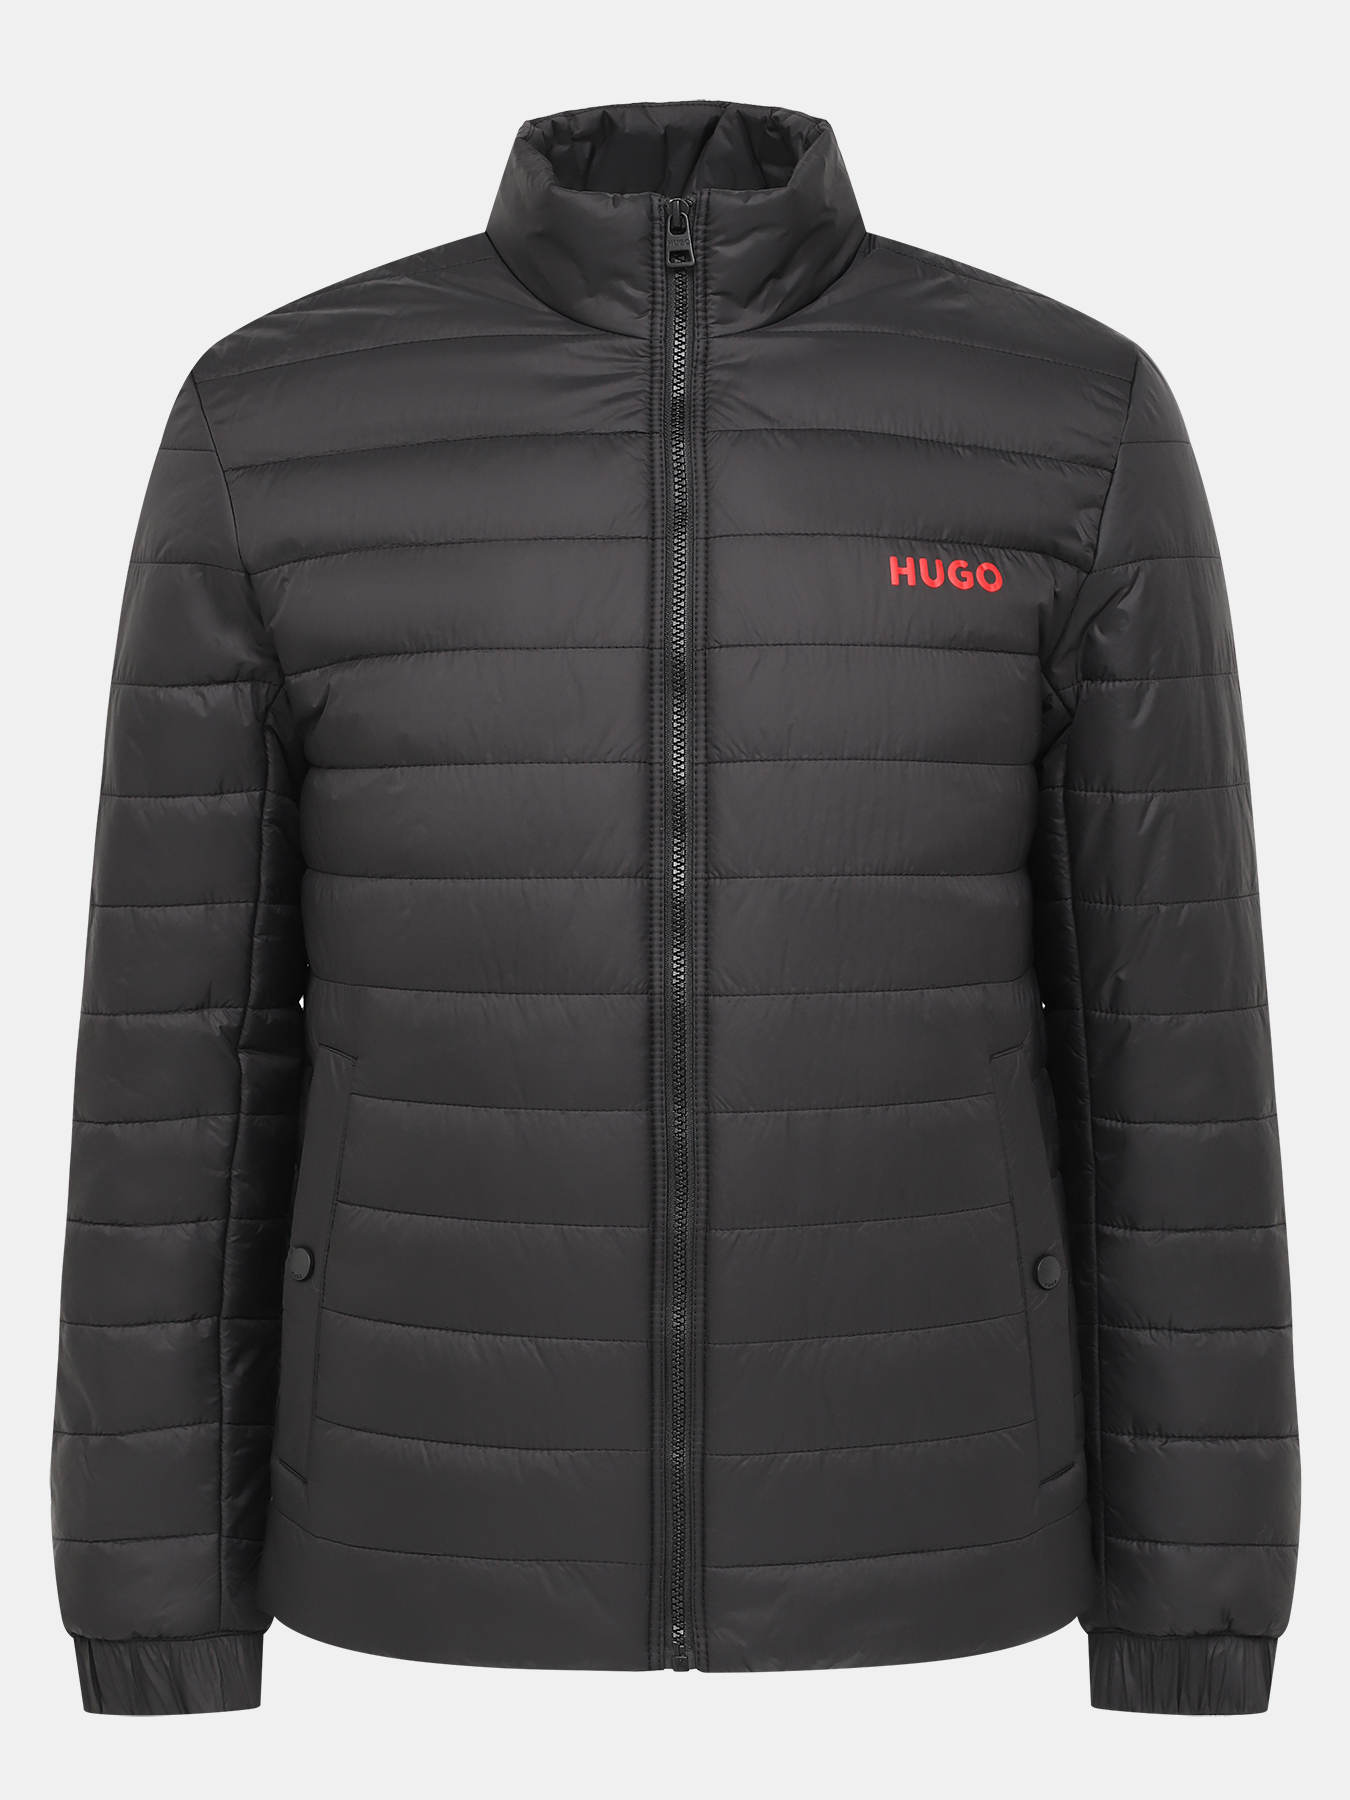 Куртка Benti HUGO 434502-043, цвет черный, размер 48-50 - фото 1